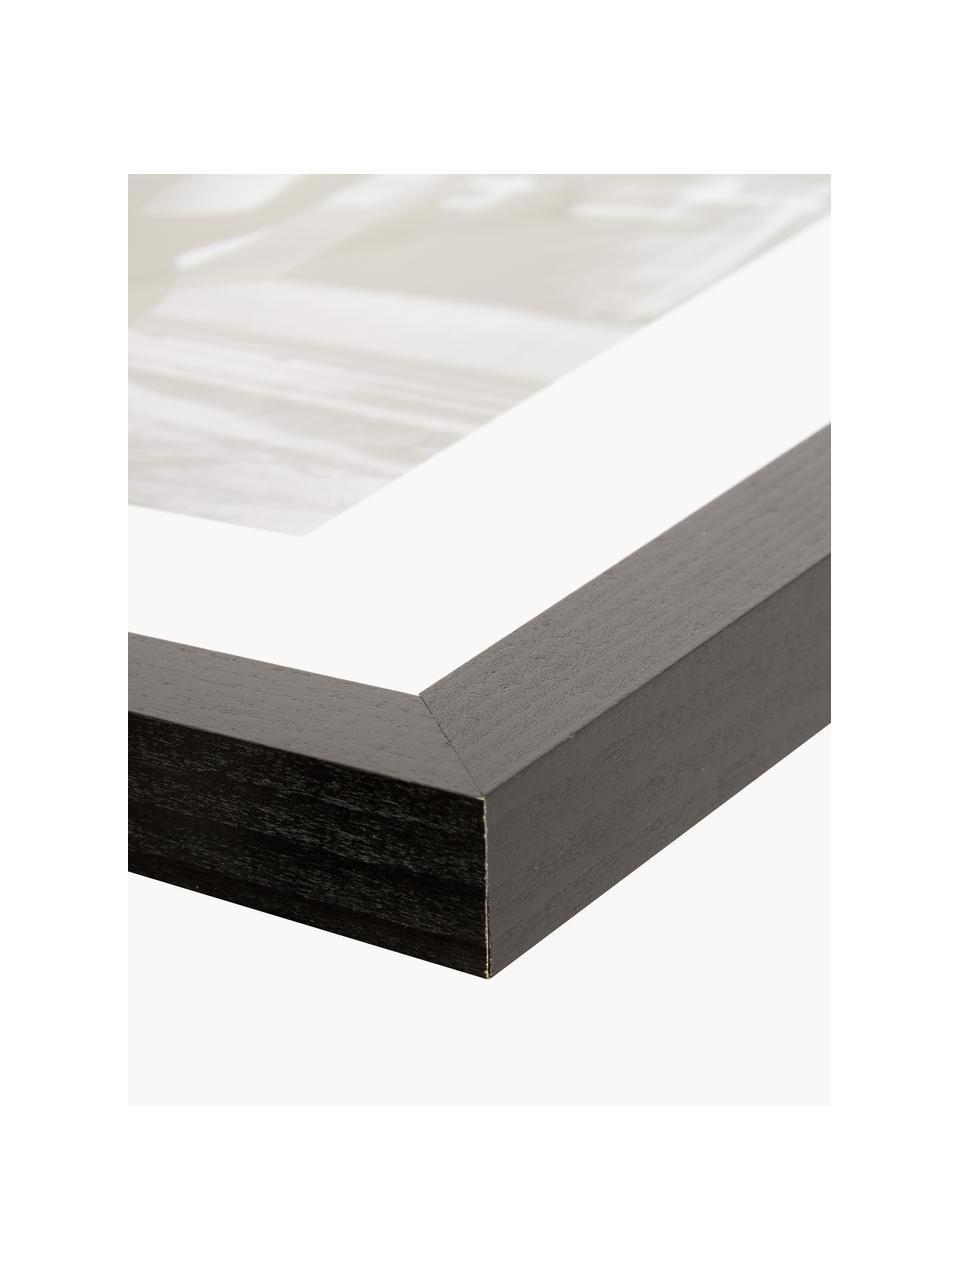 Gerahmter Digitaldruck Breakfast at Tiffany's, Bild: Digitaldruck auf Papier, , Rahmen: Holz, lackiert, Front: Plexiglas, Schwarz, Weiß, B 33 x H 43 cm